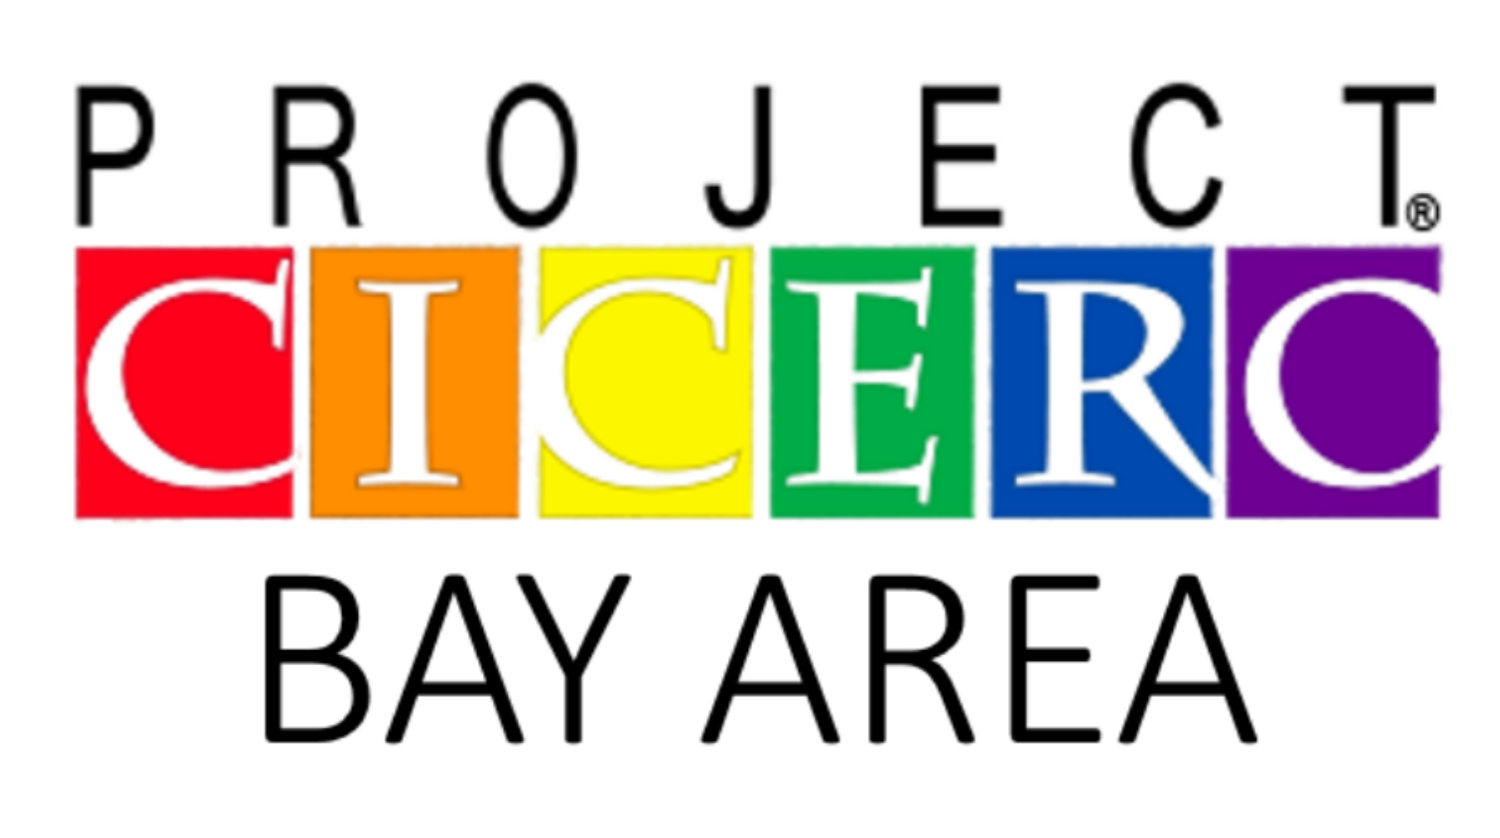 Project Cicero Bay Area